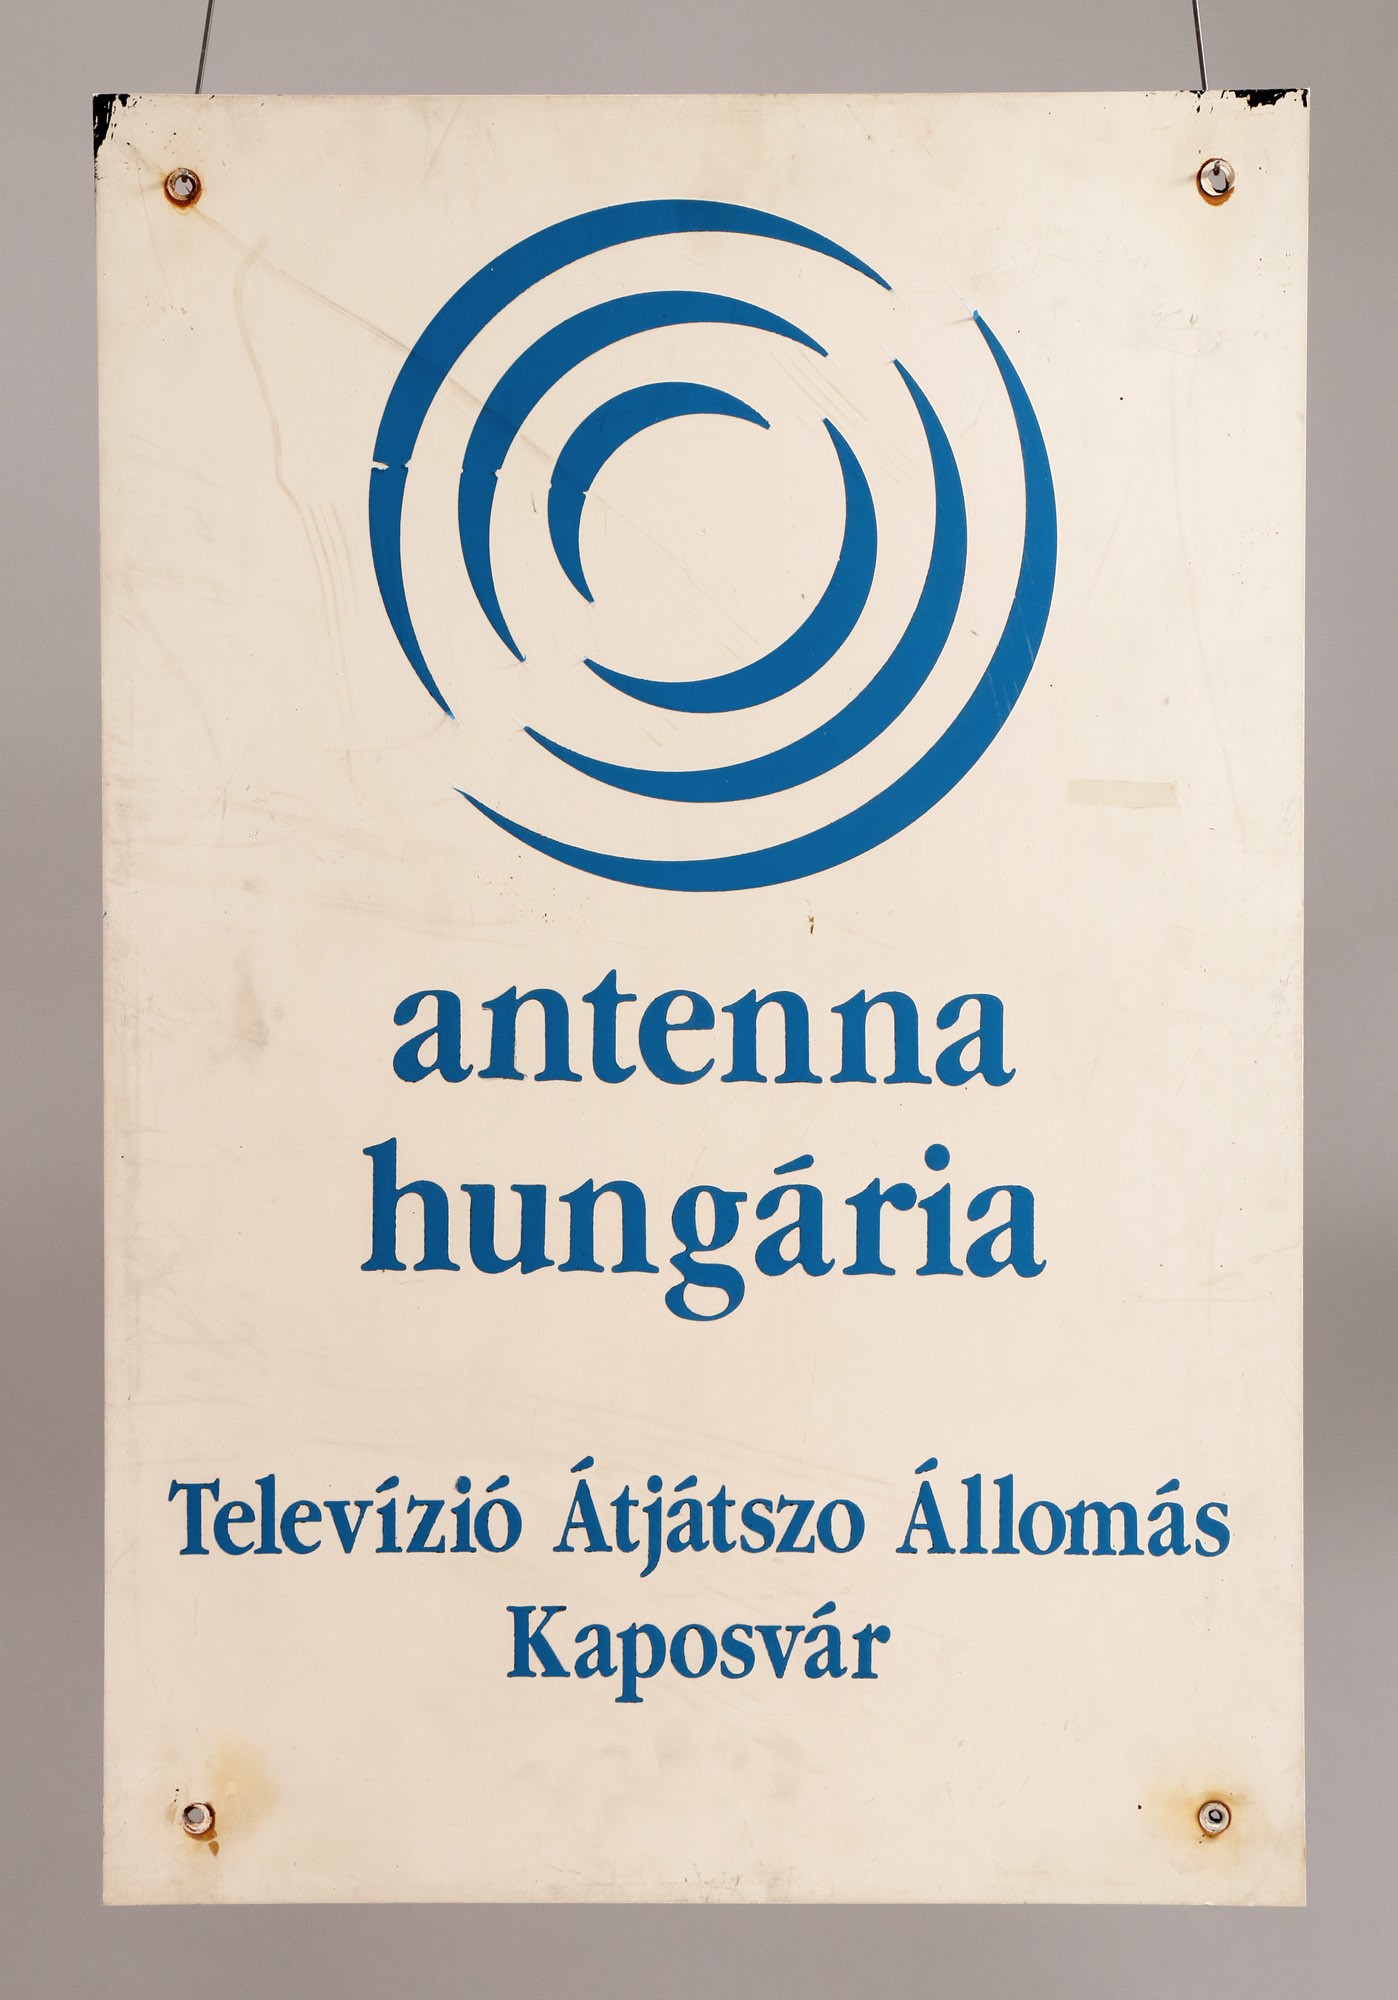 Címtábla (műanyag) "ANTENNA HUNGÁRIA TELEVÍZIÓ ÁTJÁTSZÓ ÁLLOMÁS KAPOSVÁR" (Postamúzeum CC BY-NC-SA)